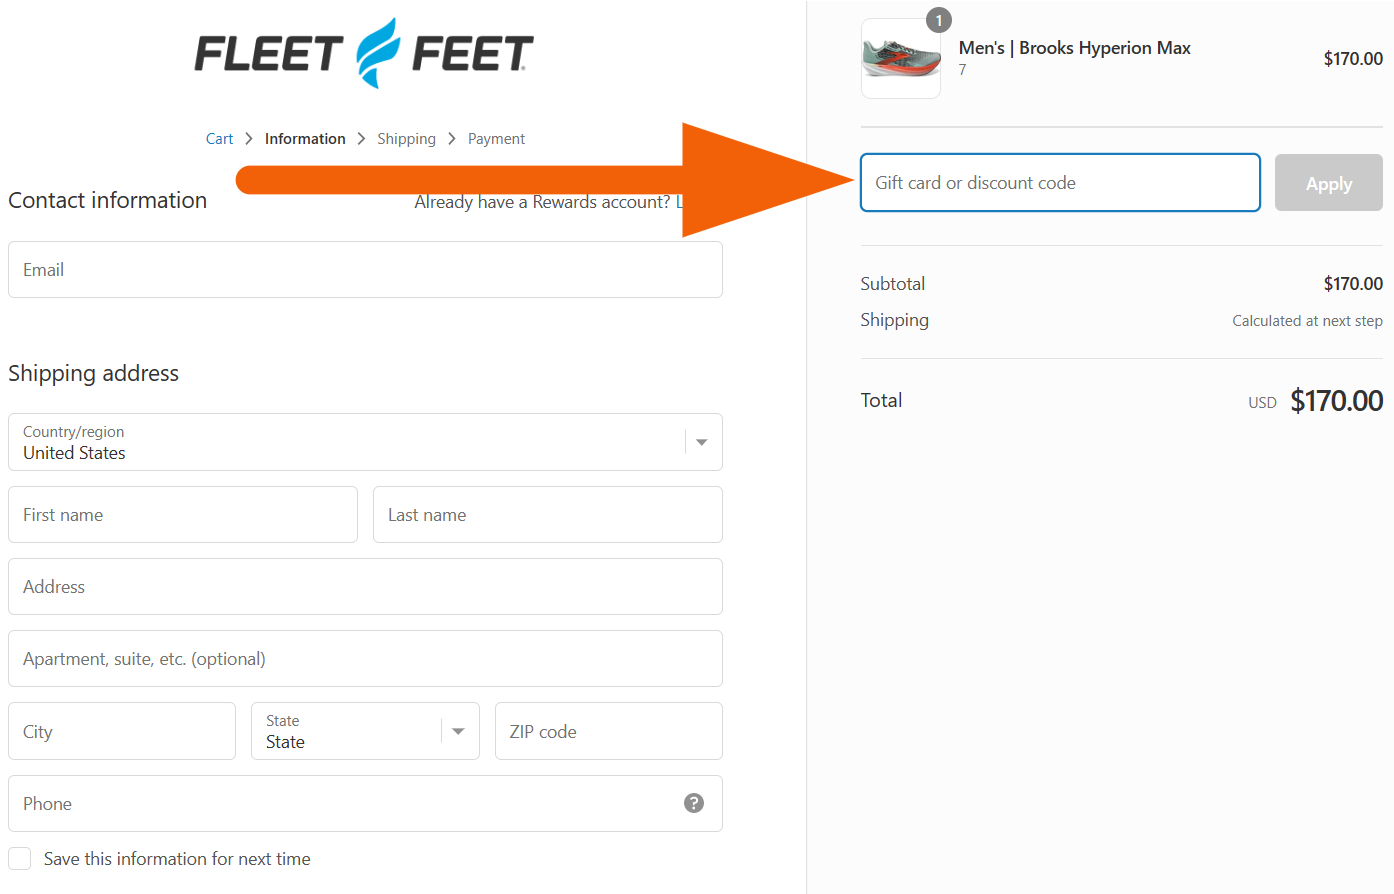 fleet feet coupon code